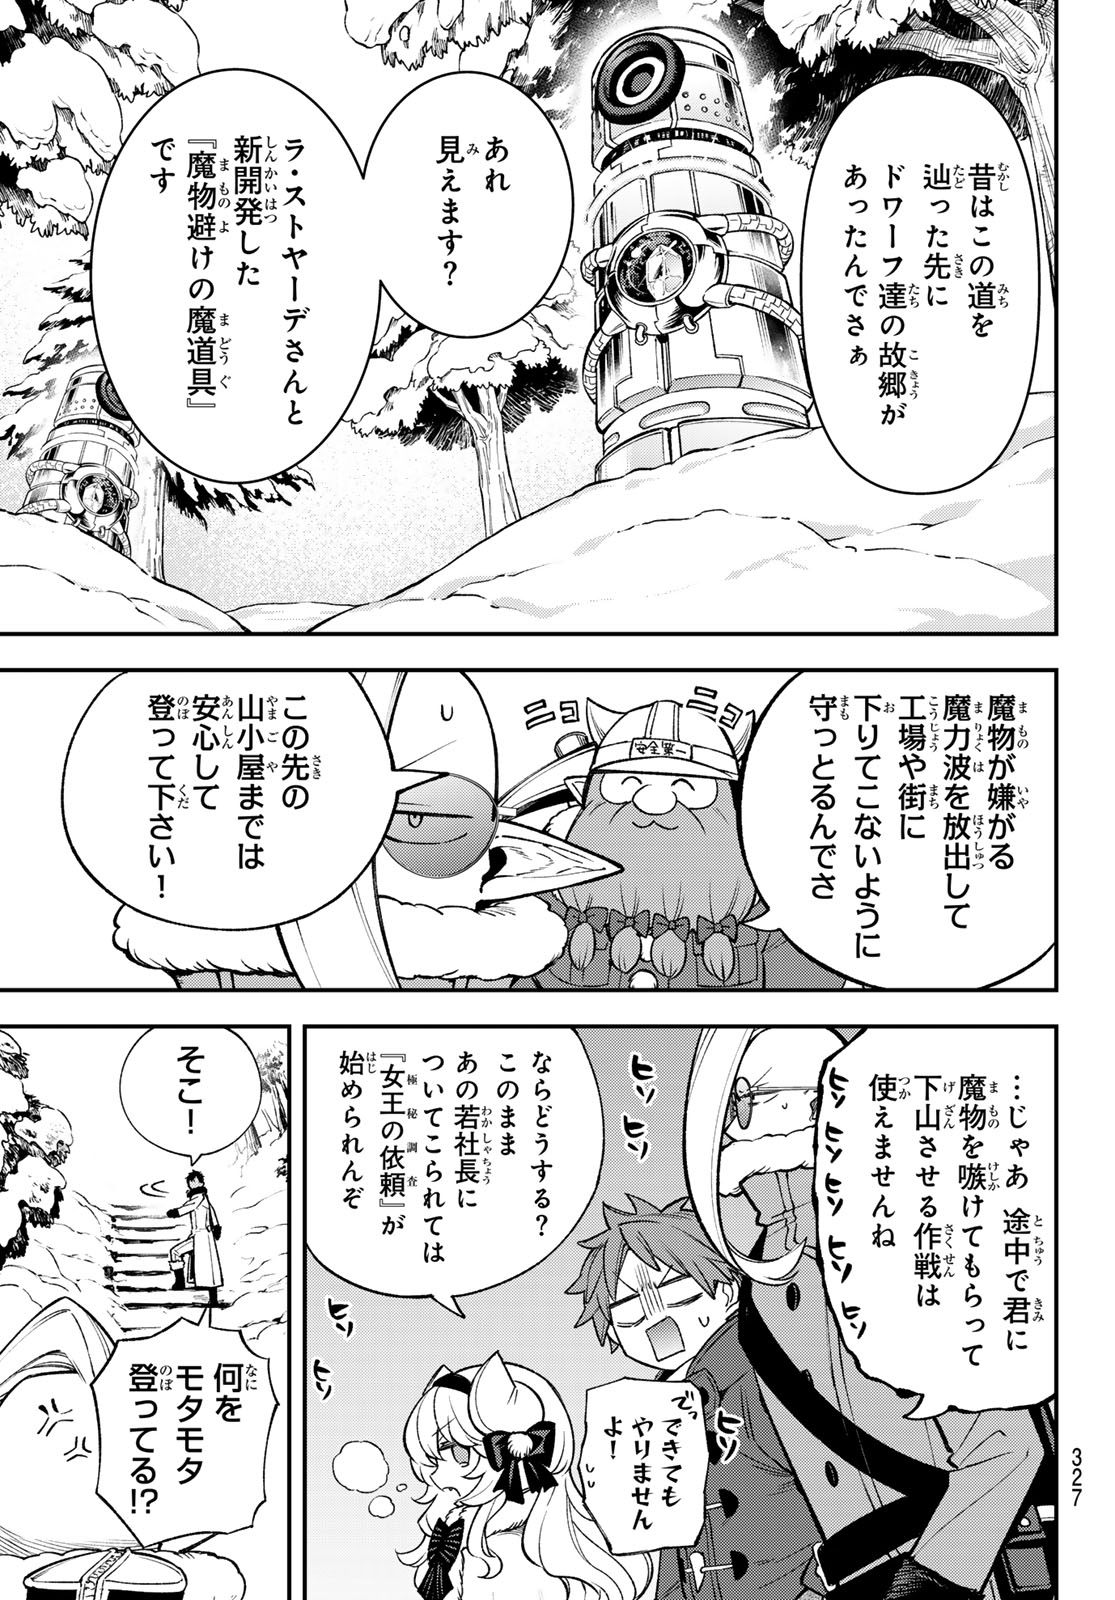 Sudachi no Maoujou - Chapter 29 - Page 3